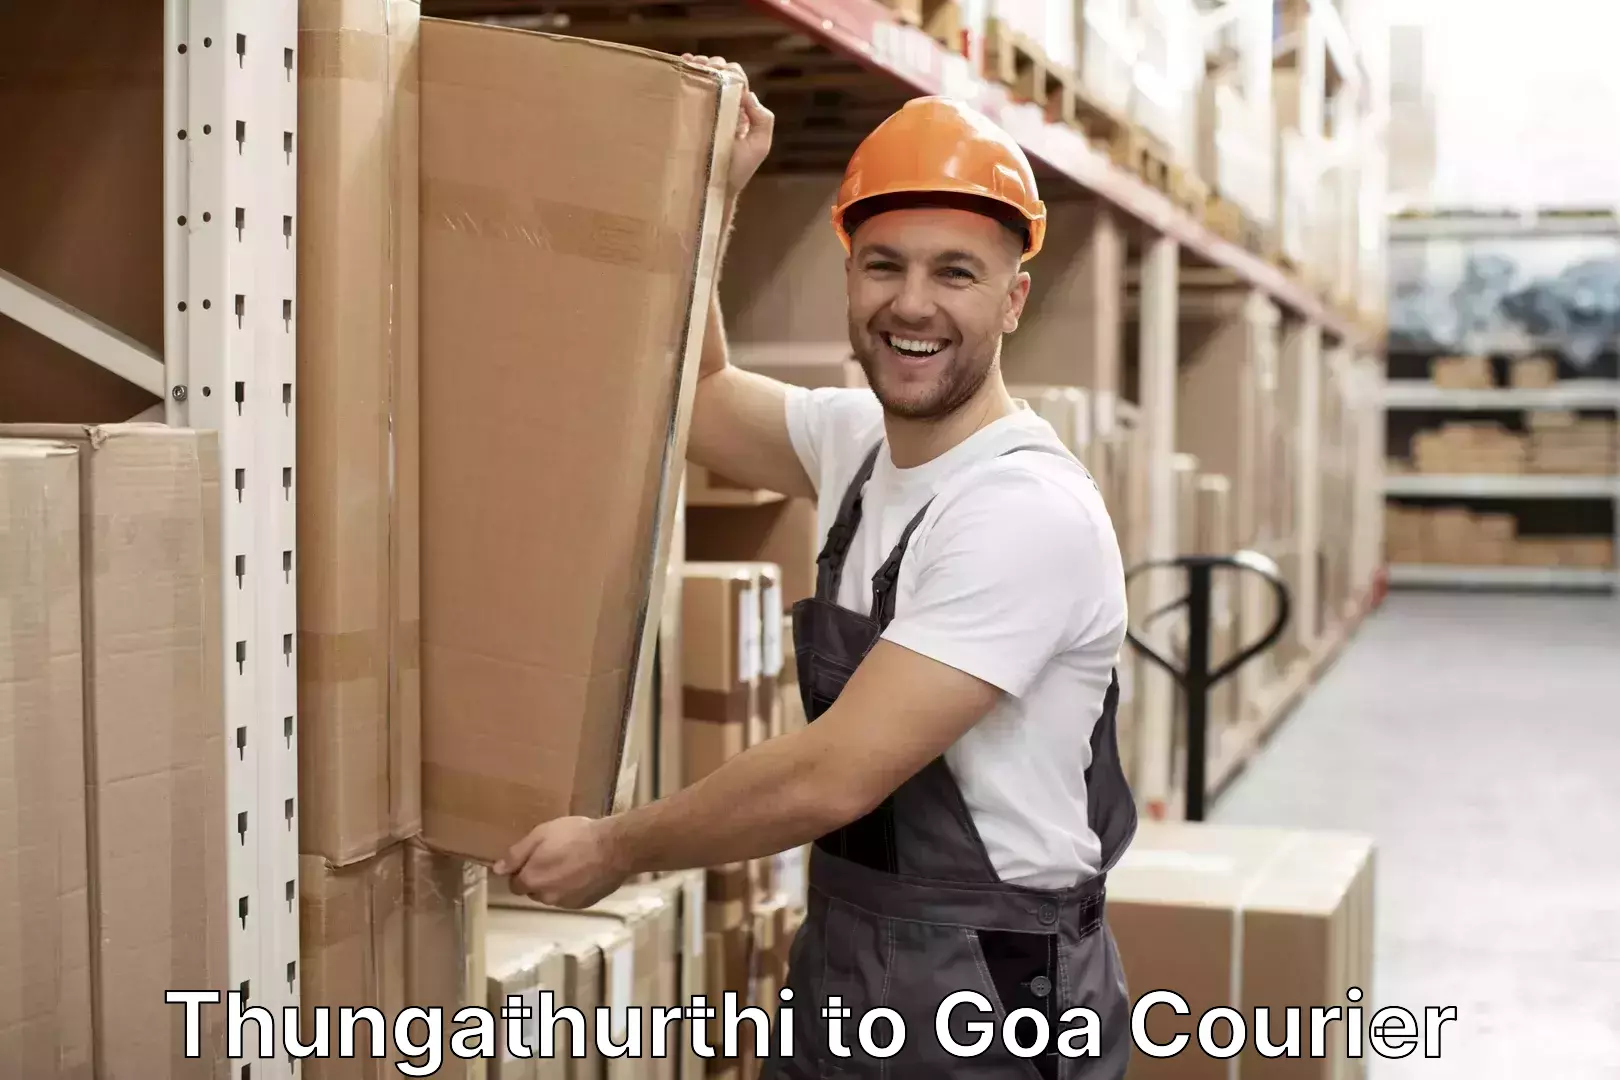 Luggage shipment strategy Thungathurthi to Goa